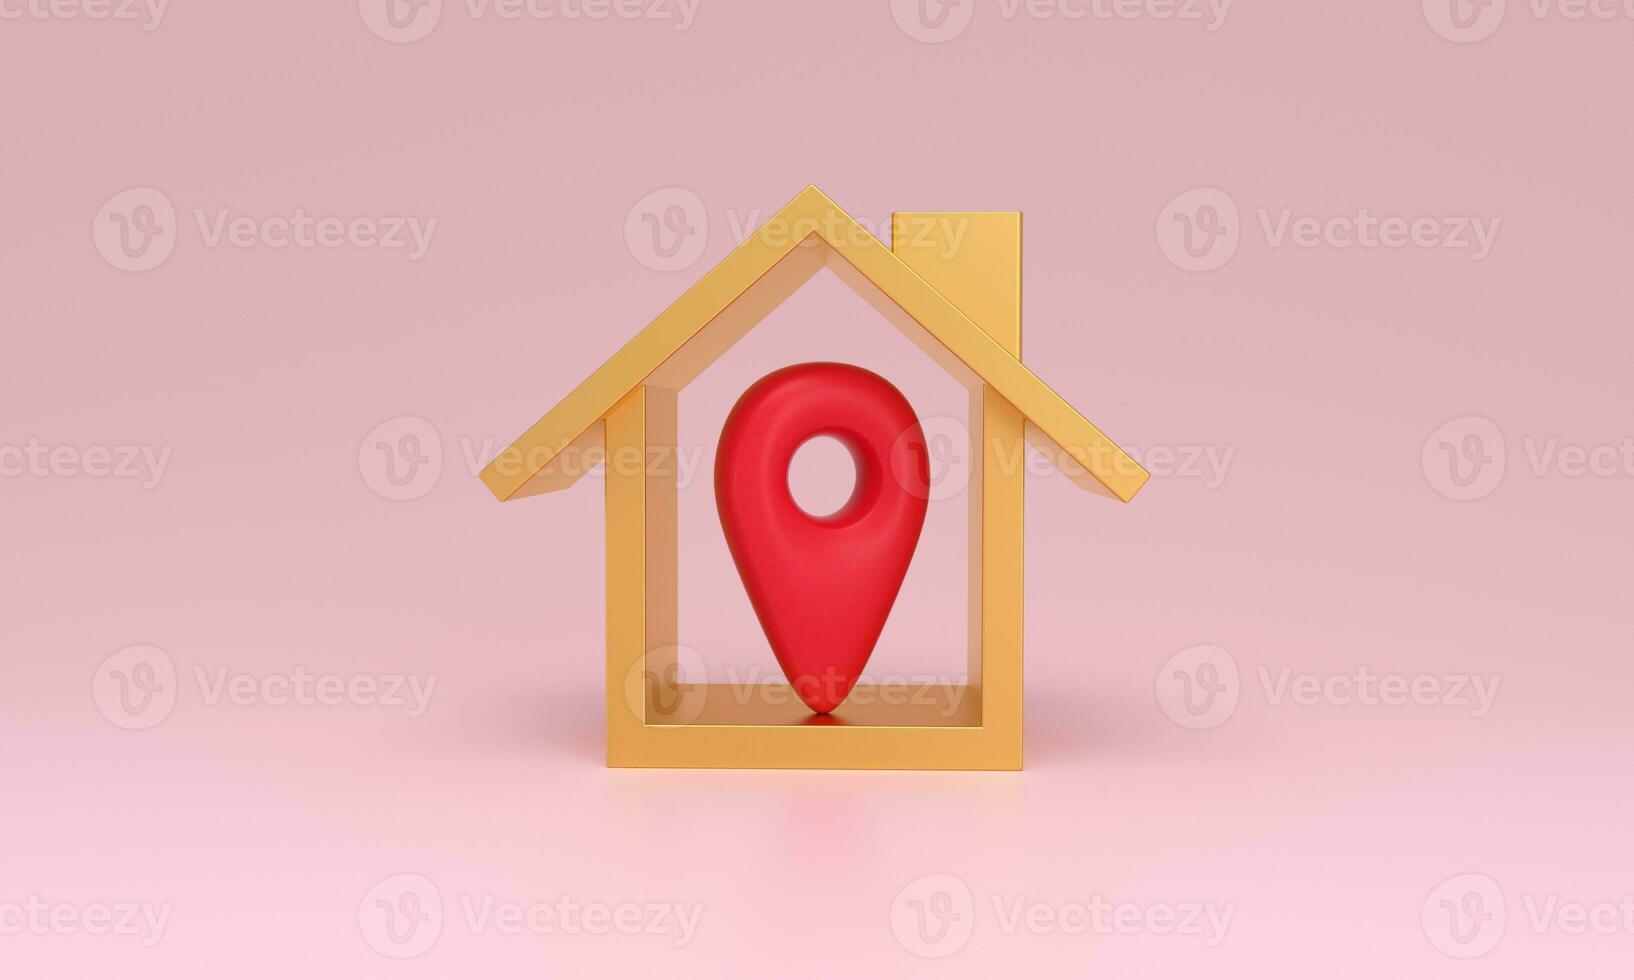 casa símbolo com localização PIN ícone do real Estado venda ou propriedade investimento conceito. foto